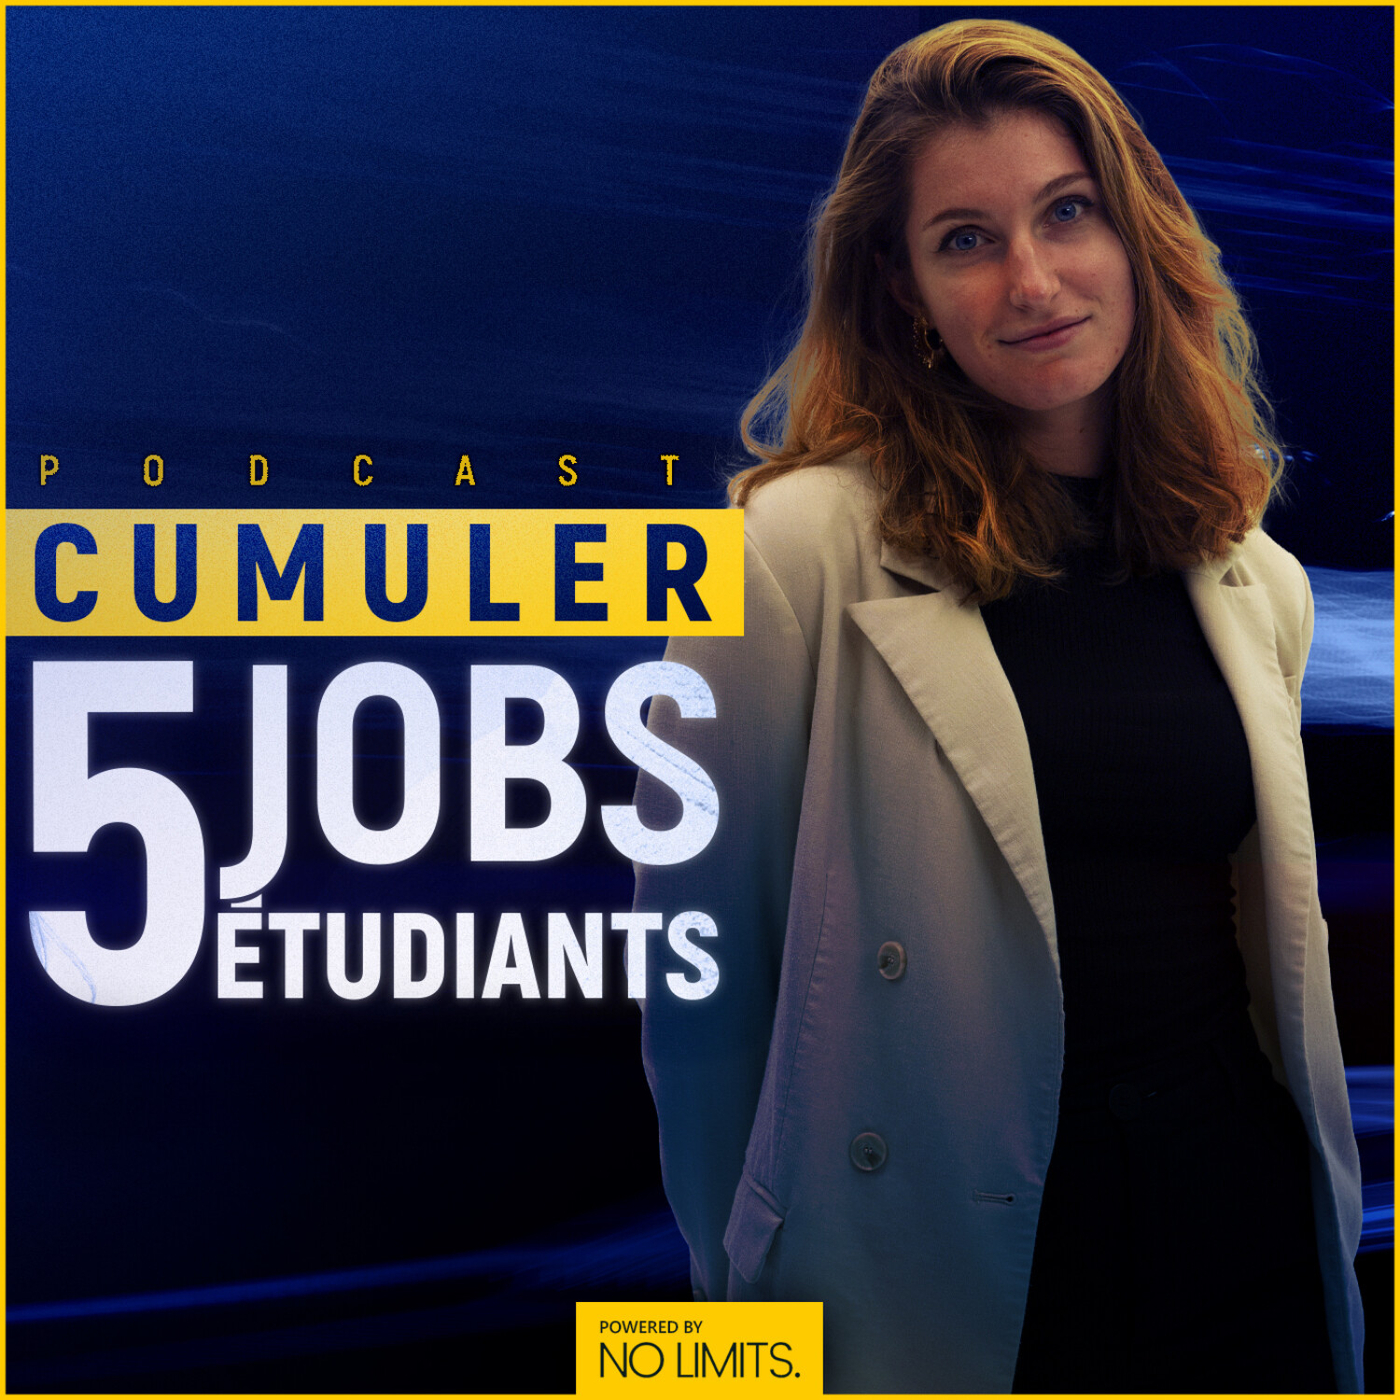 #31 - Alice Alacoque : Cumuler 5 jobs